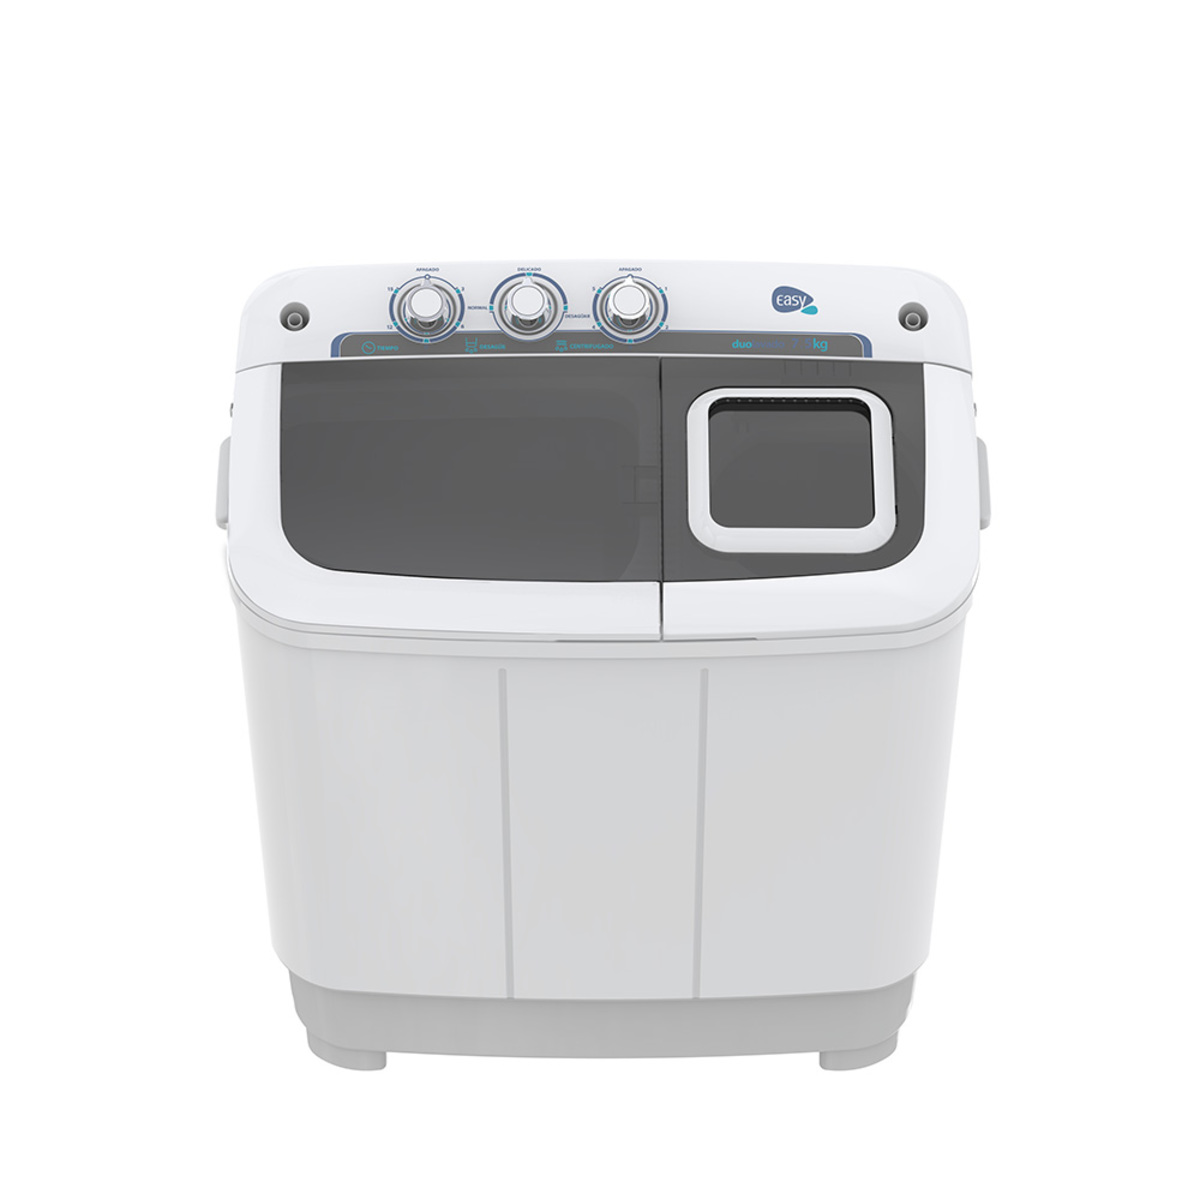 Lavadora semiautomática 7 kg Blanca IEM - LID732B0, Lavadoras, Lavado y  Secado